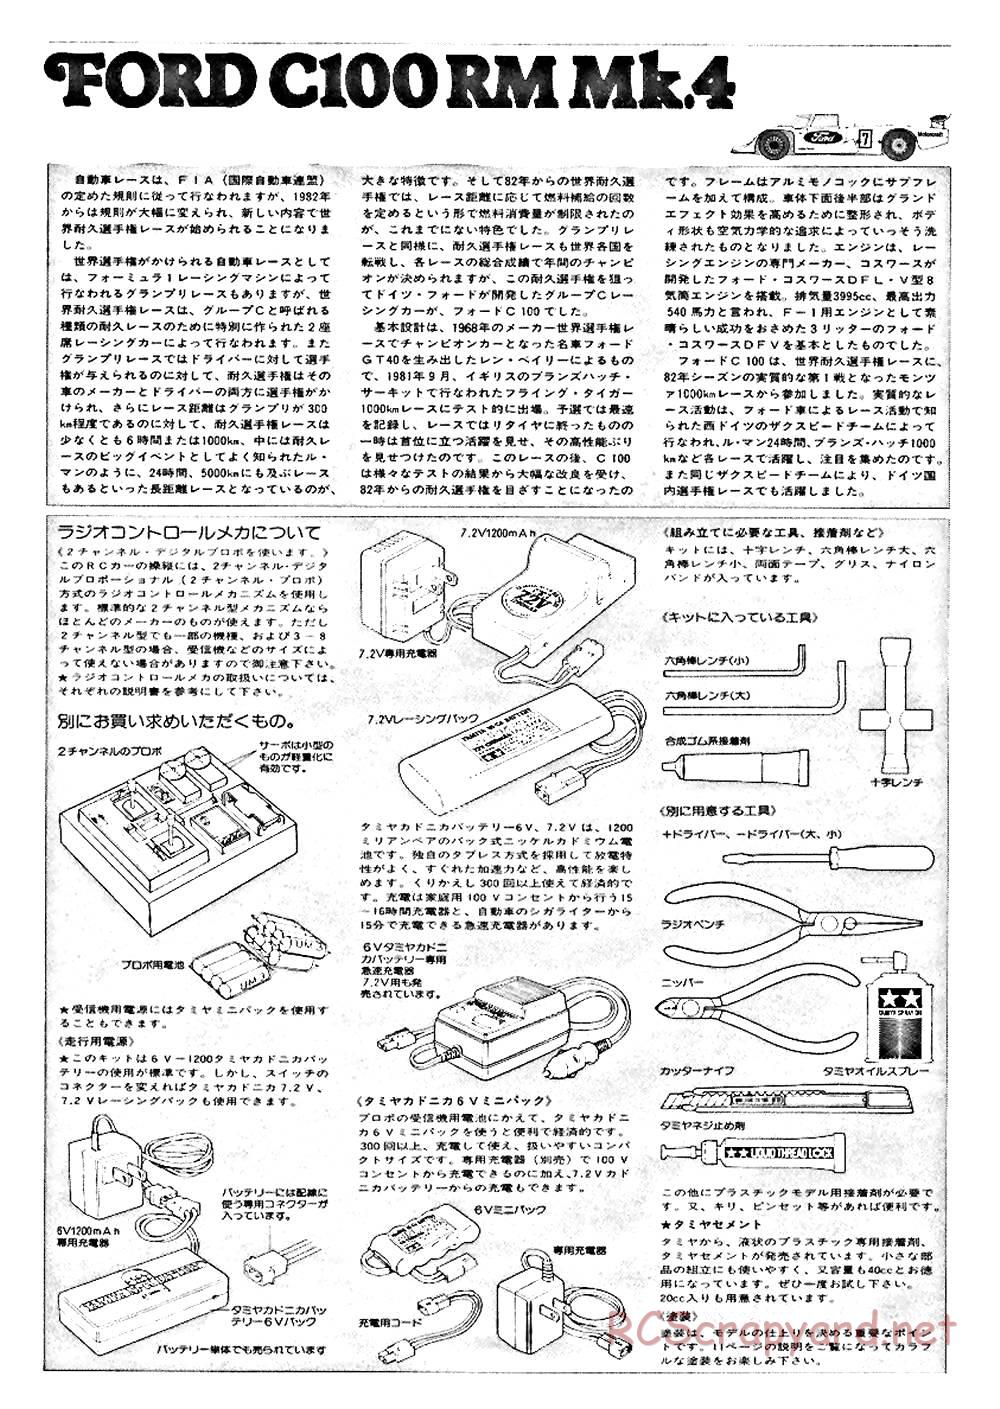 Tamiya - Ford C100 - RM MK.4 - 58033 - Manual - Page 2